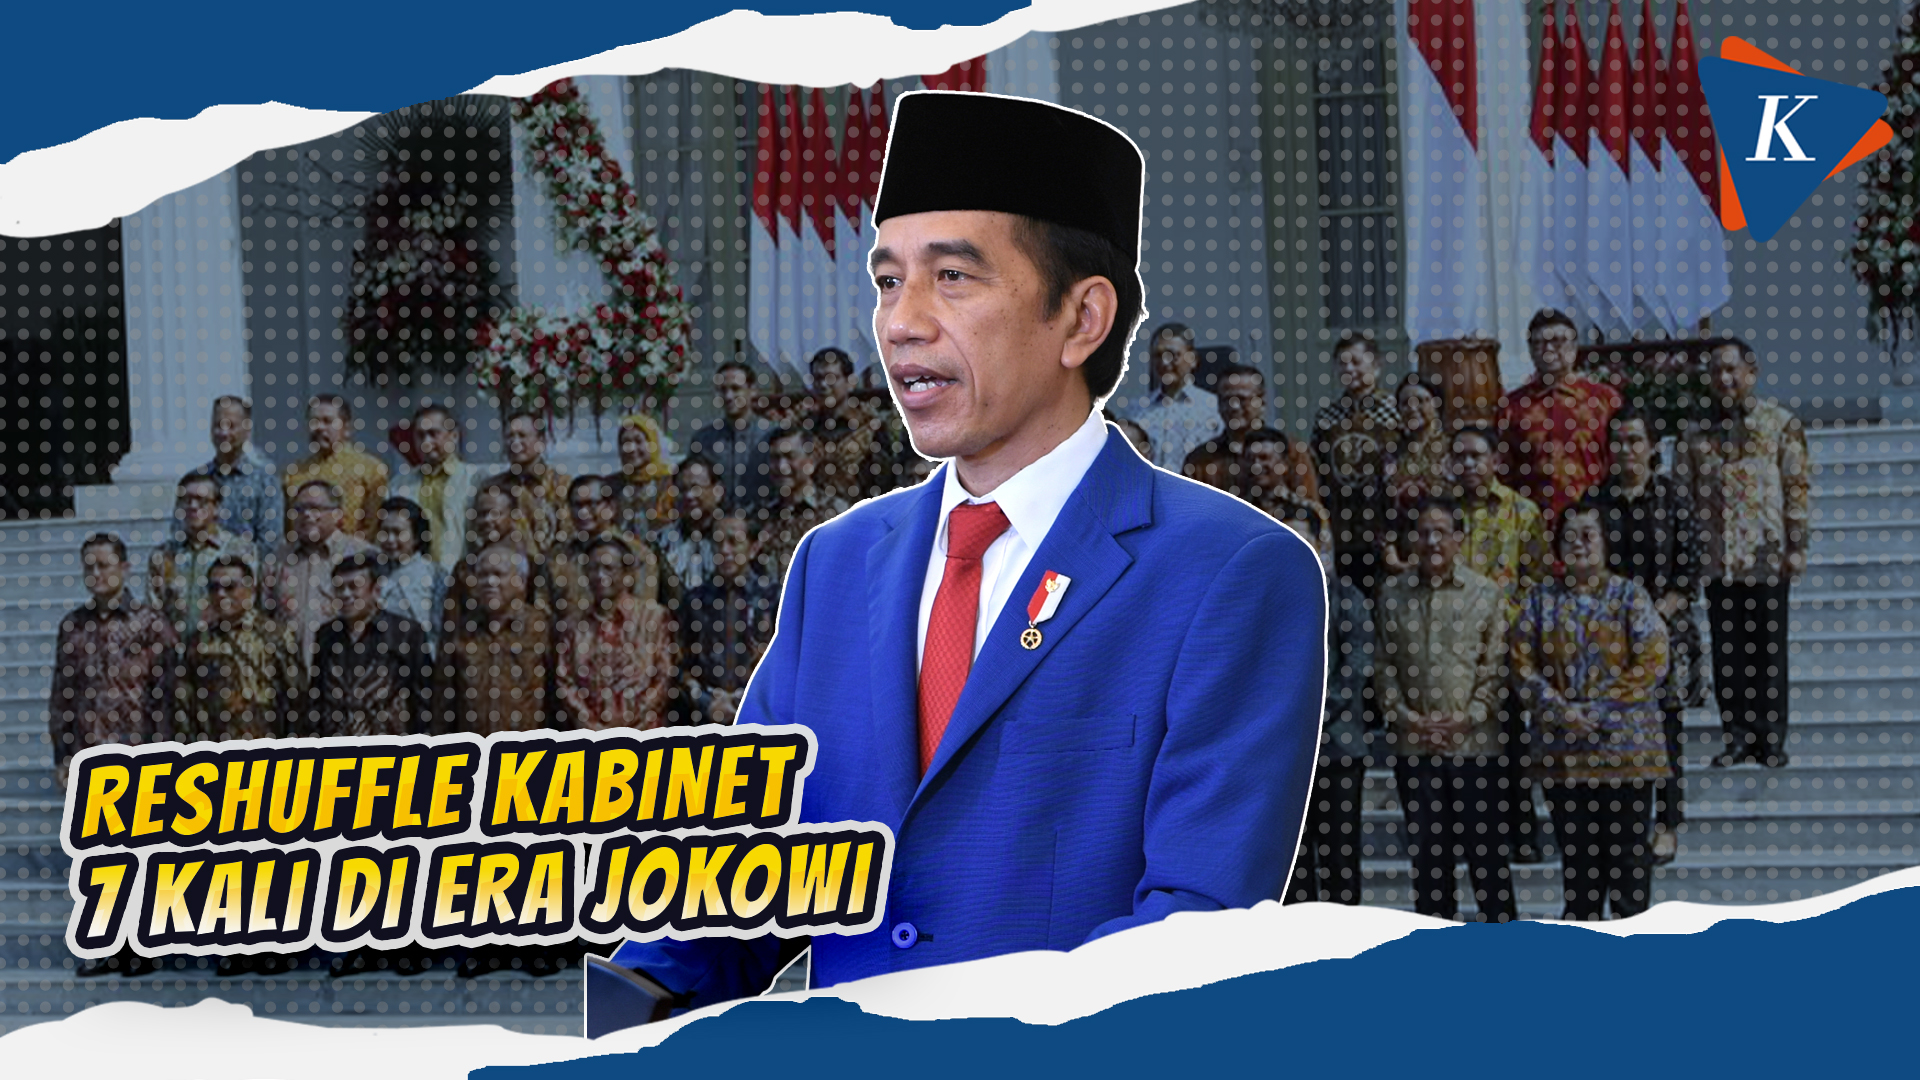 Sinyal Reshuffle Kabinet Menguat, Ini Riwayat Perombakan Menteri Jokowi